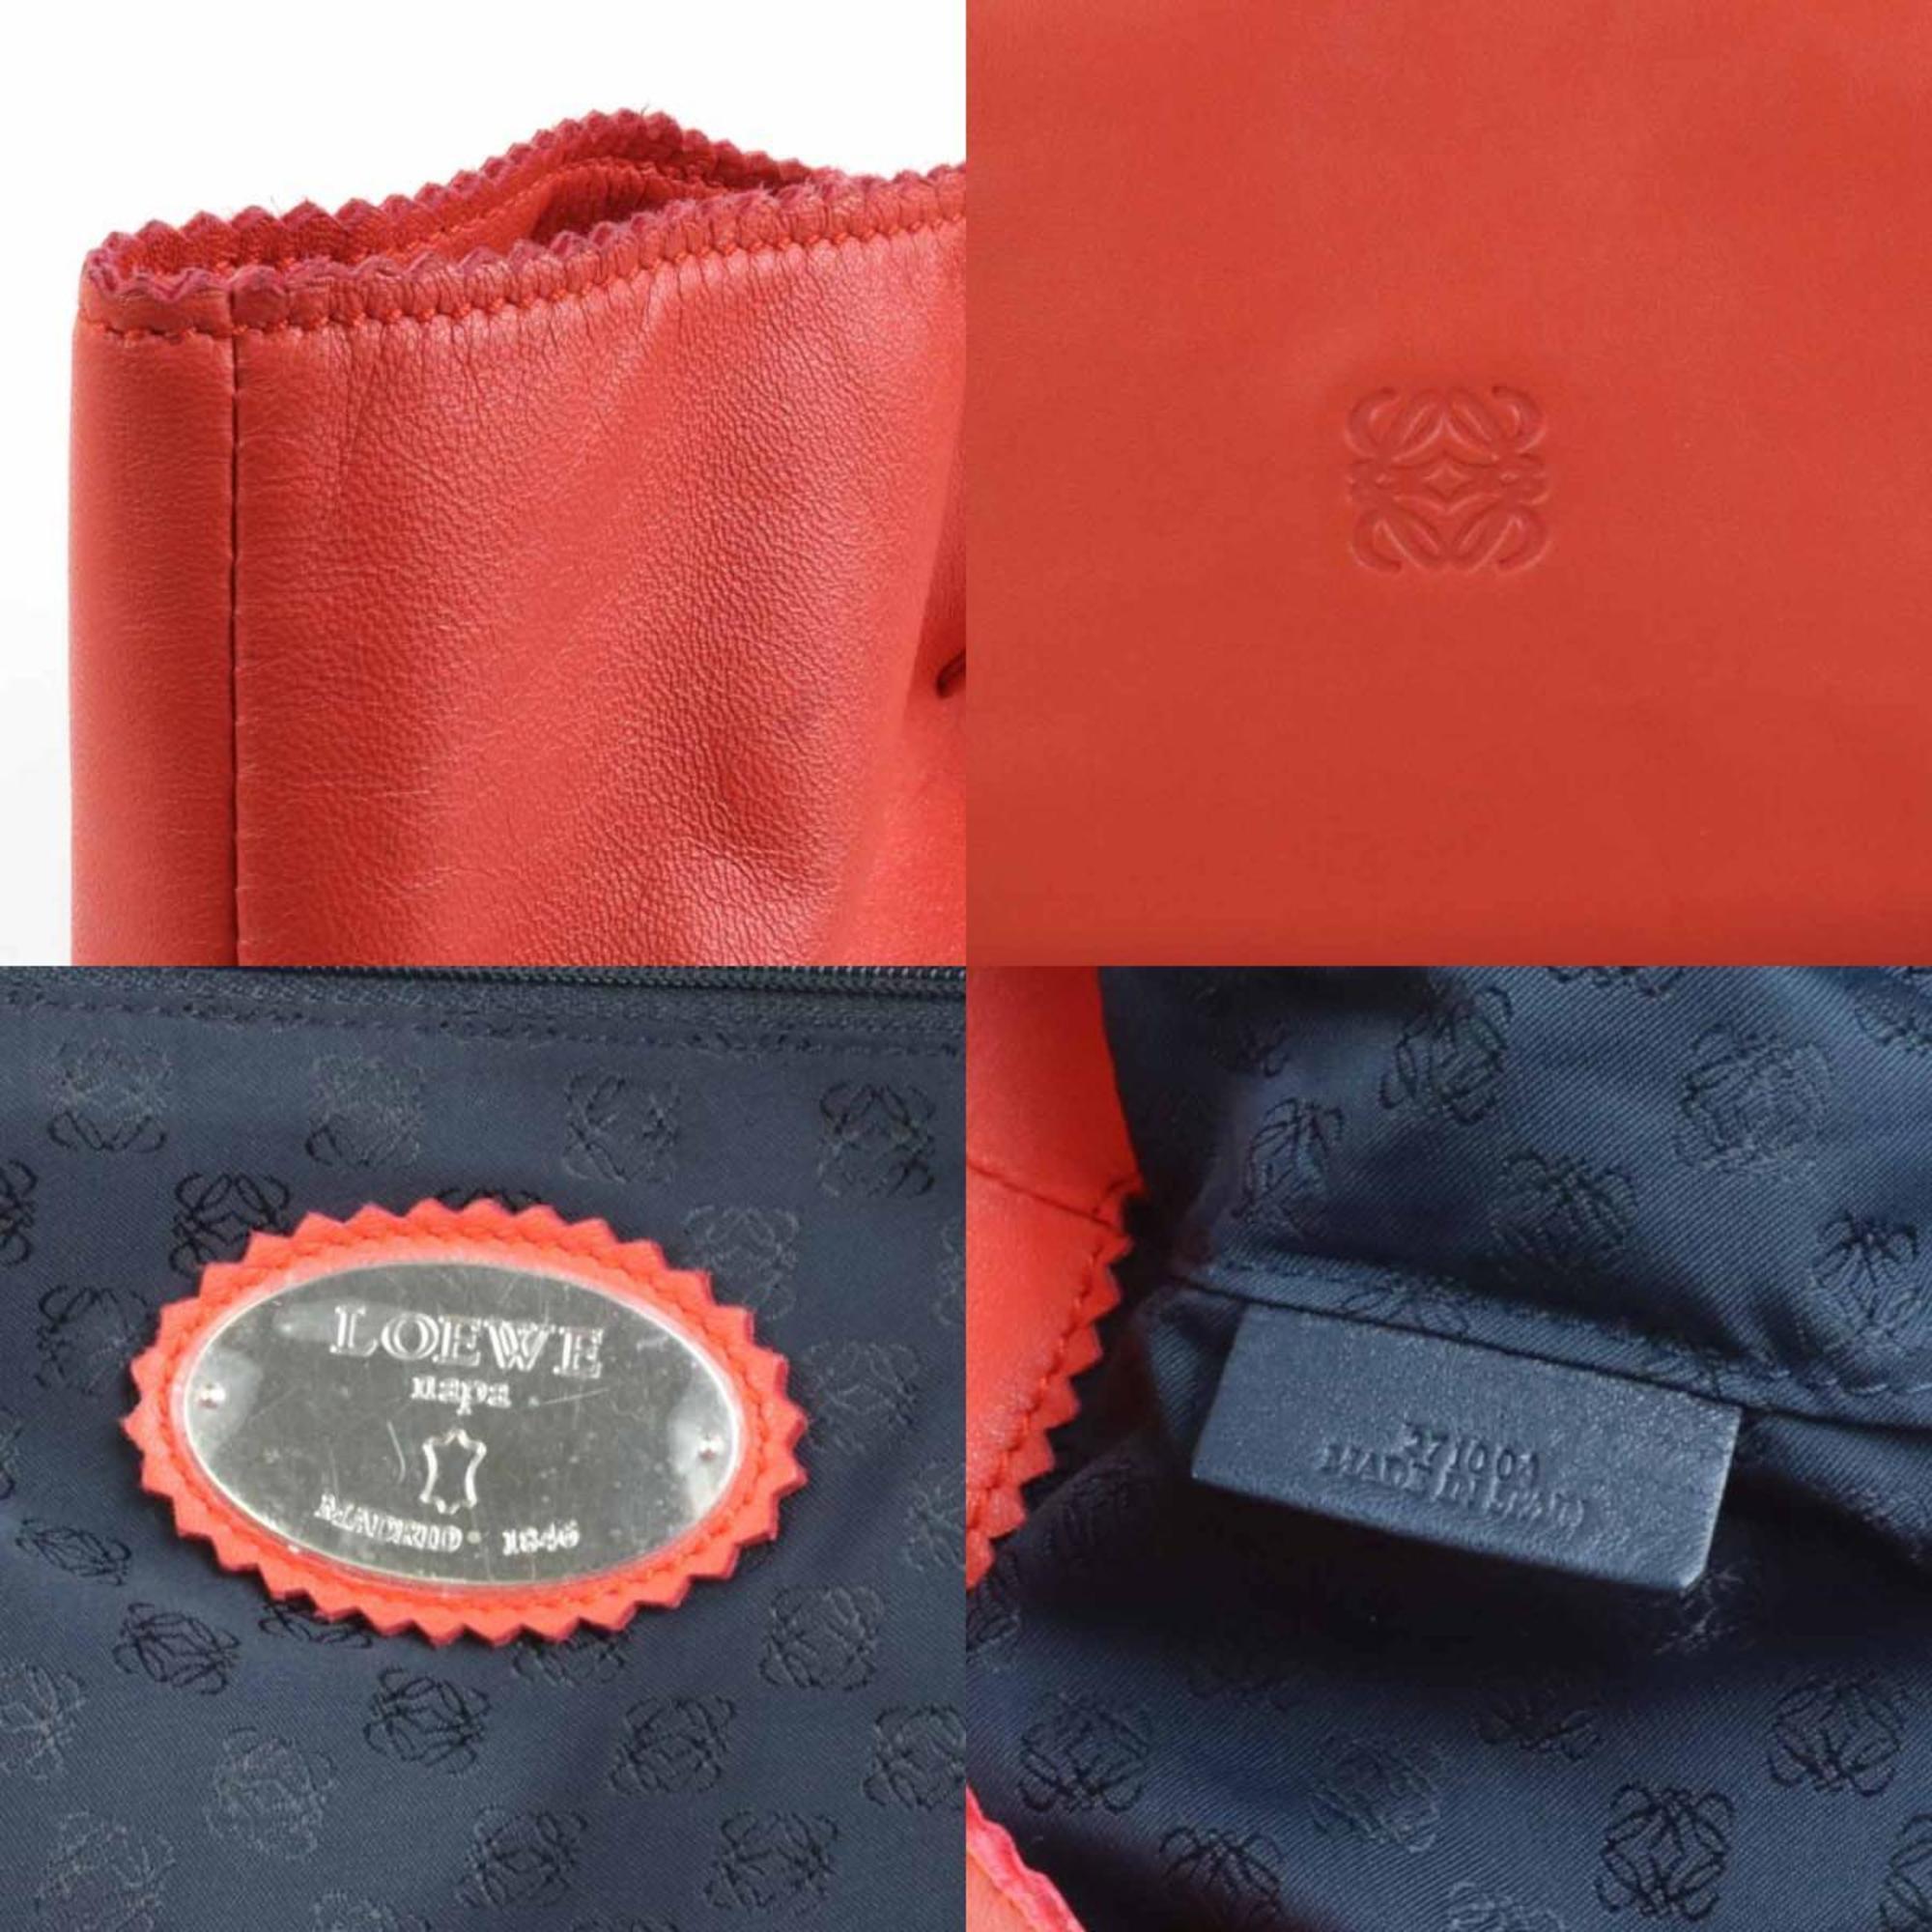 Loewe LOEWE shoulder bag tote anagram leather orange red ladies